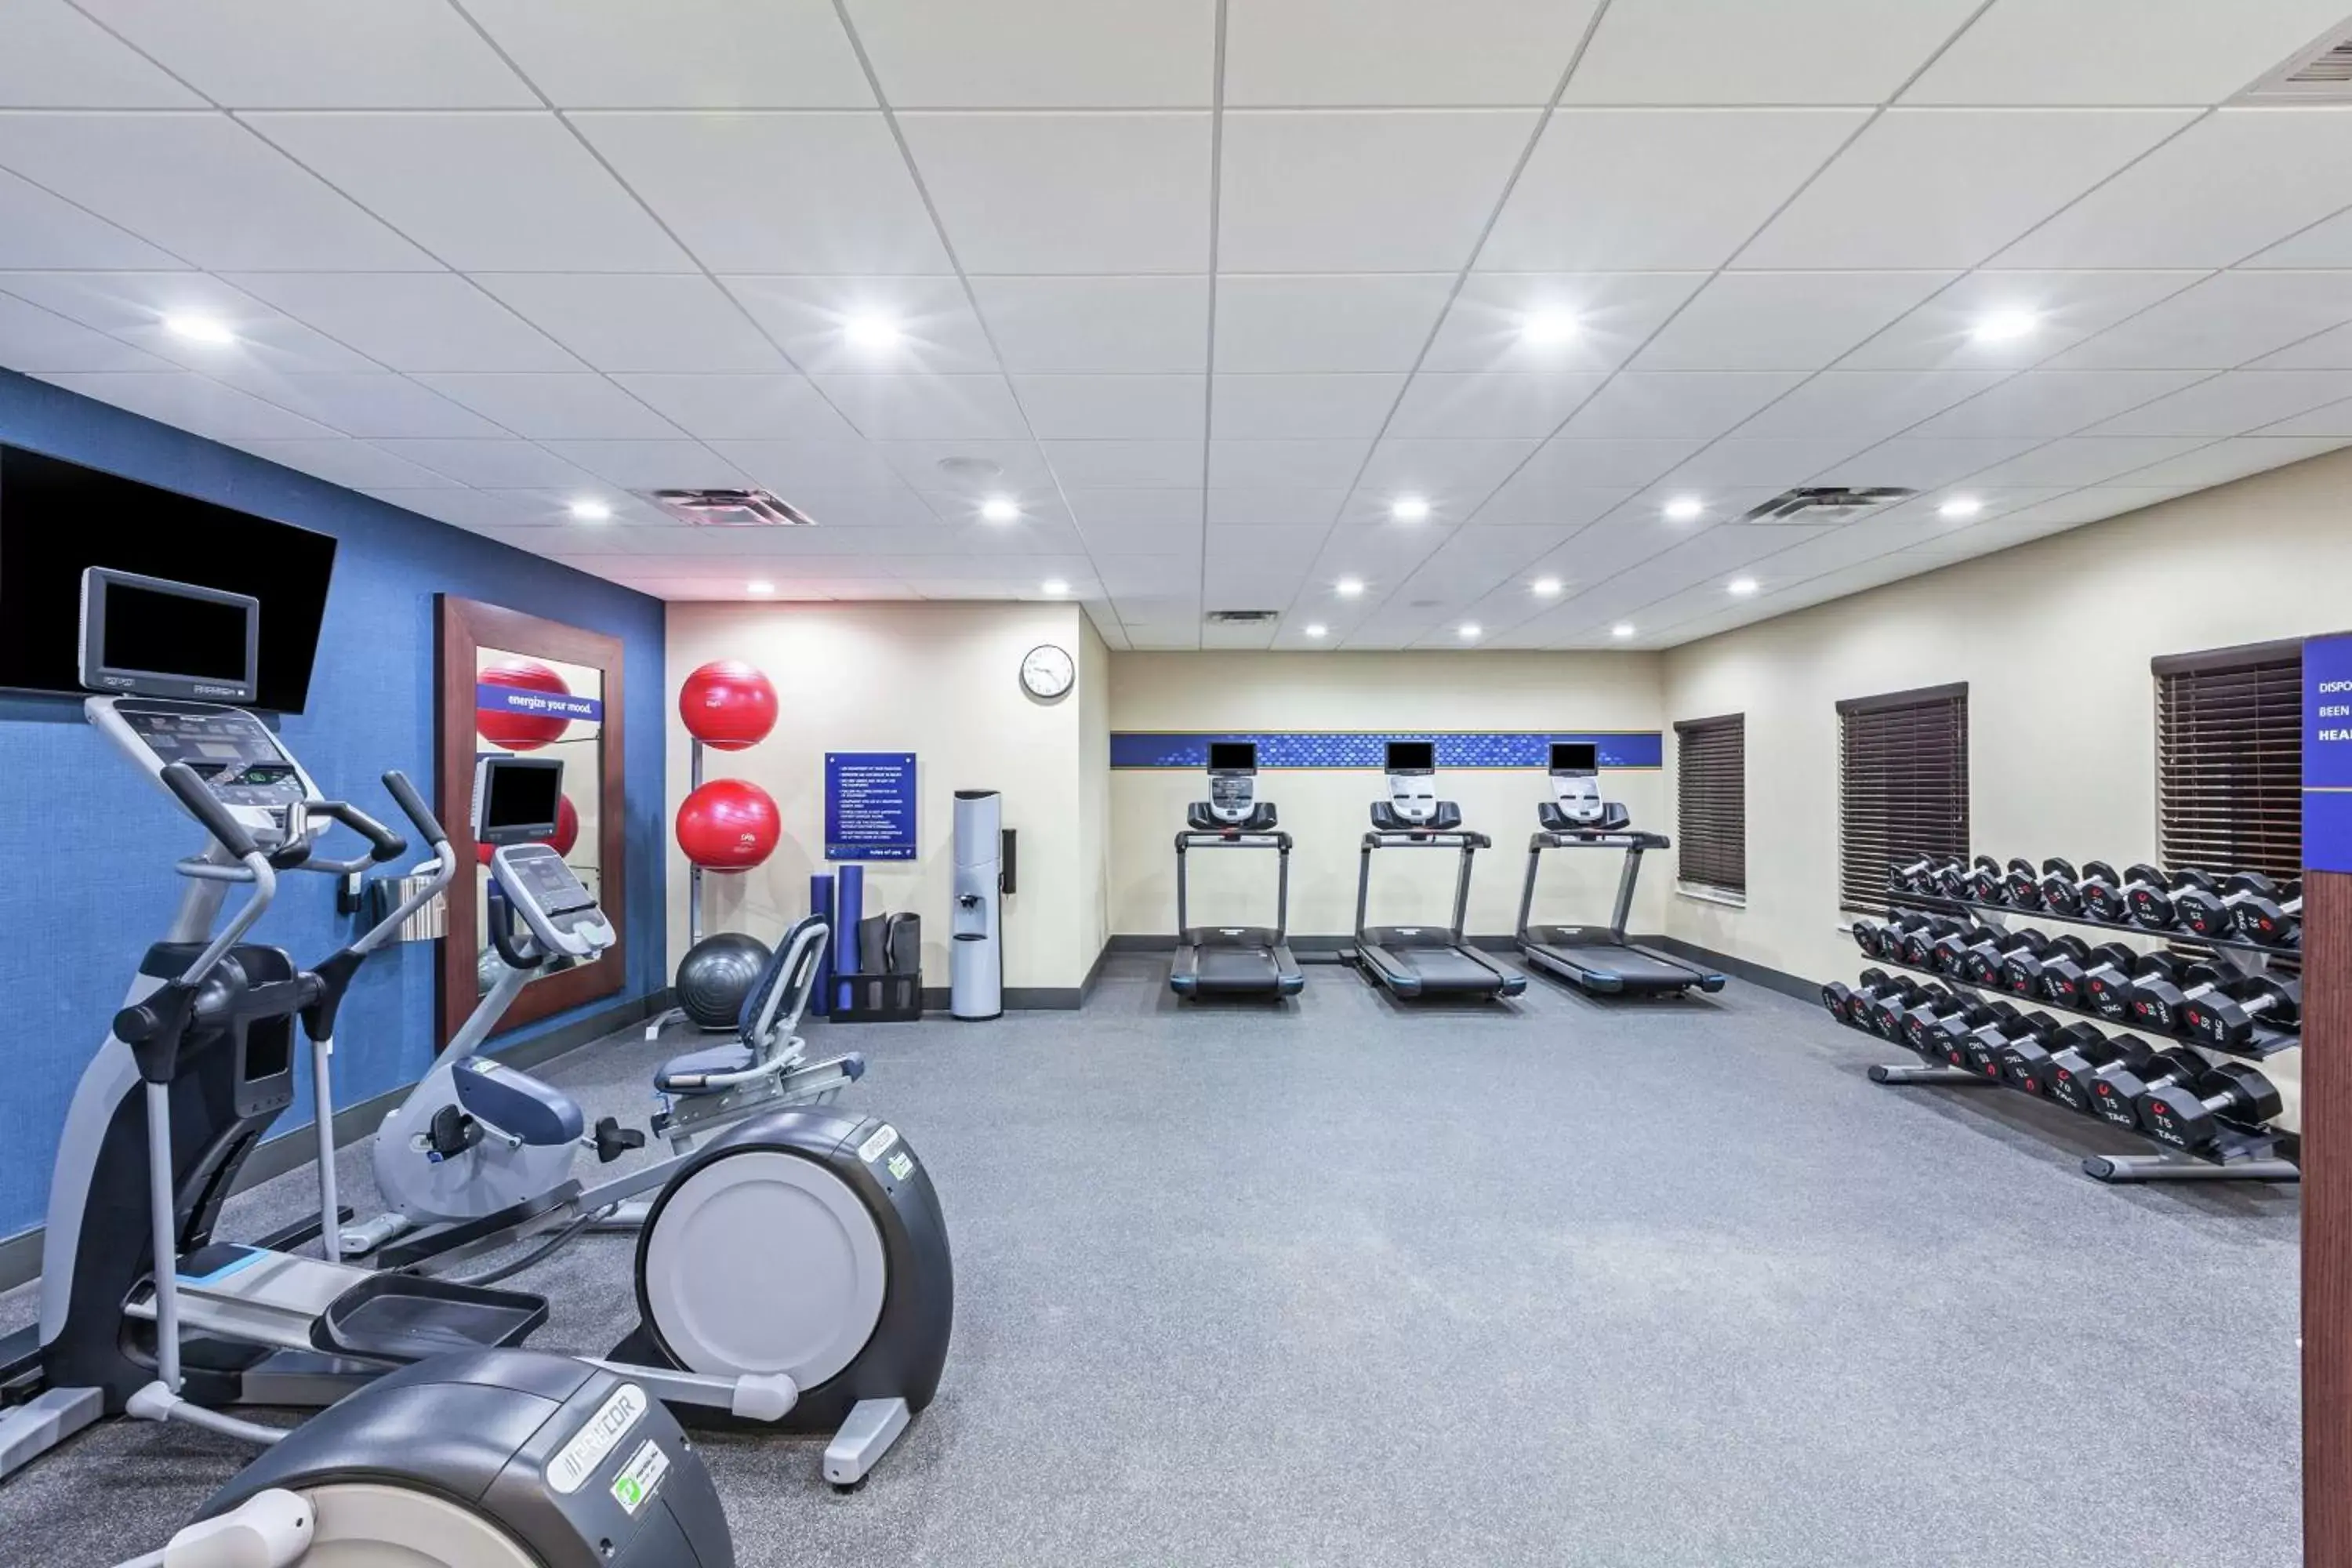 Fitness centre/facilities, Fitness Center/Facilities in Hampton Inn Gardner